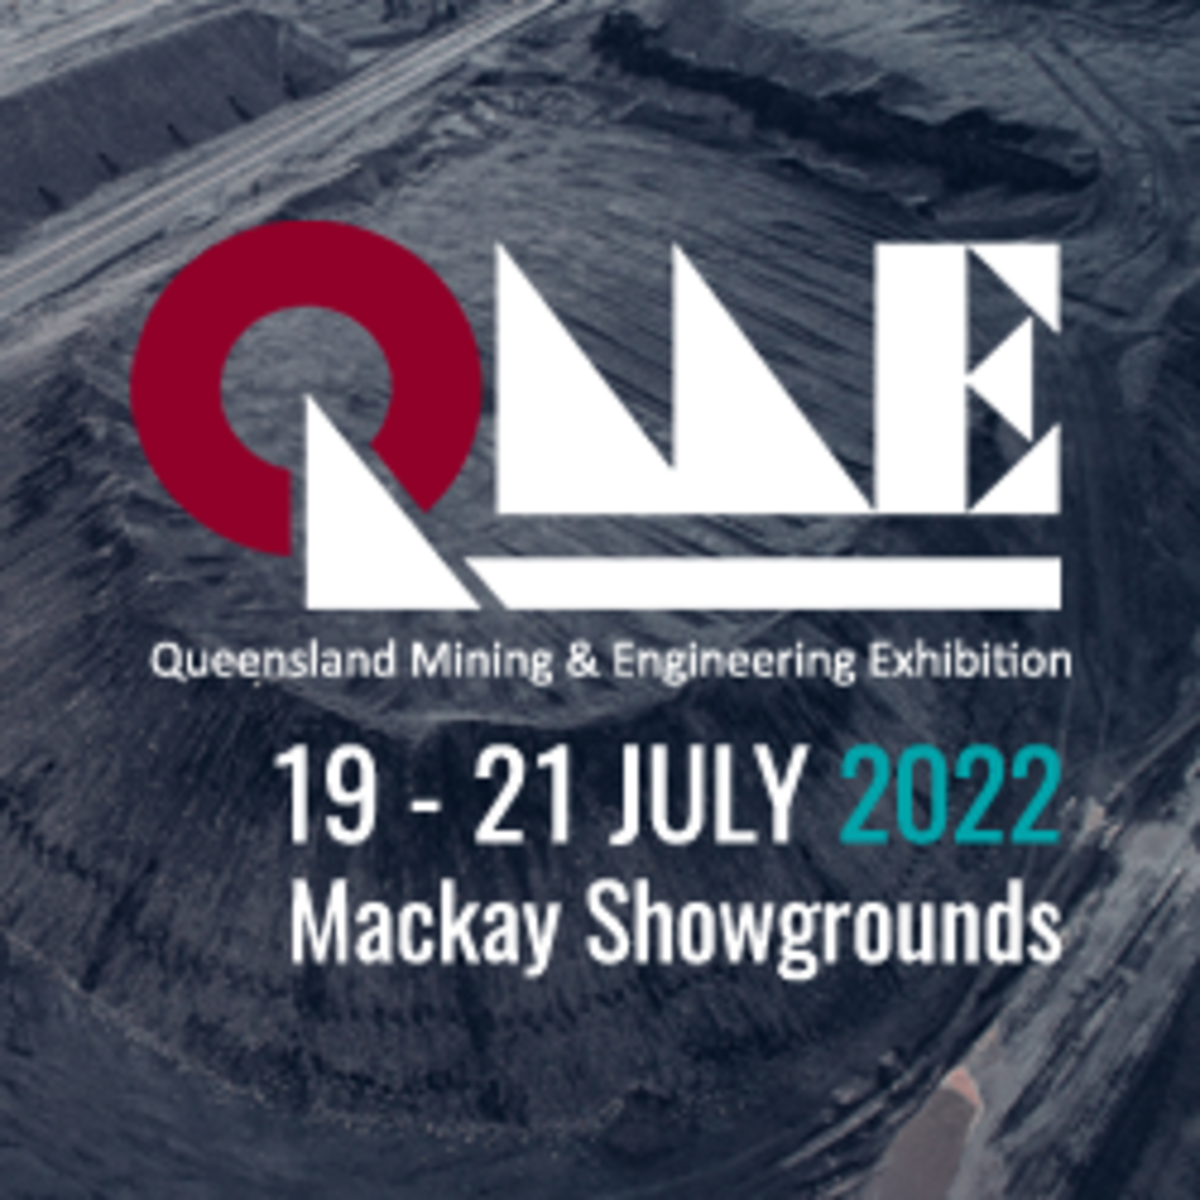 Queensland Mining & Engineering Exhibition